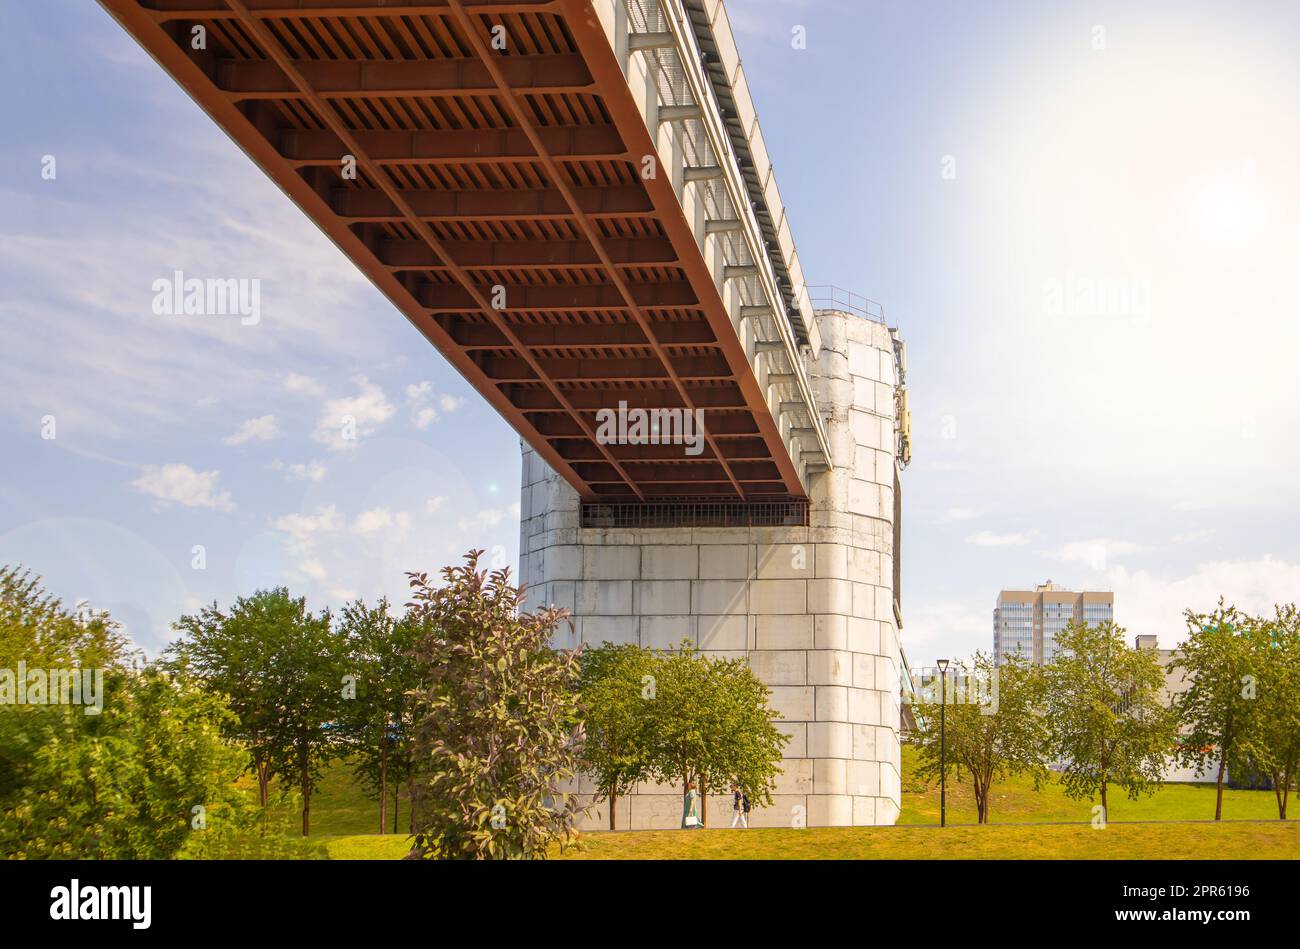 Progettazione ingegneristica del ponte della metropolitana con supporti in cemento, vista dal basso. Panorama della città con cielo e alberi Foto Stock